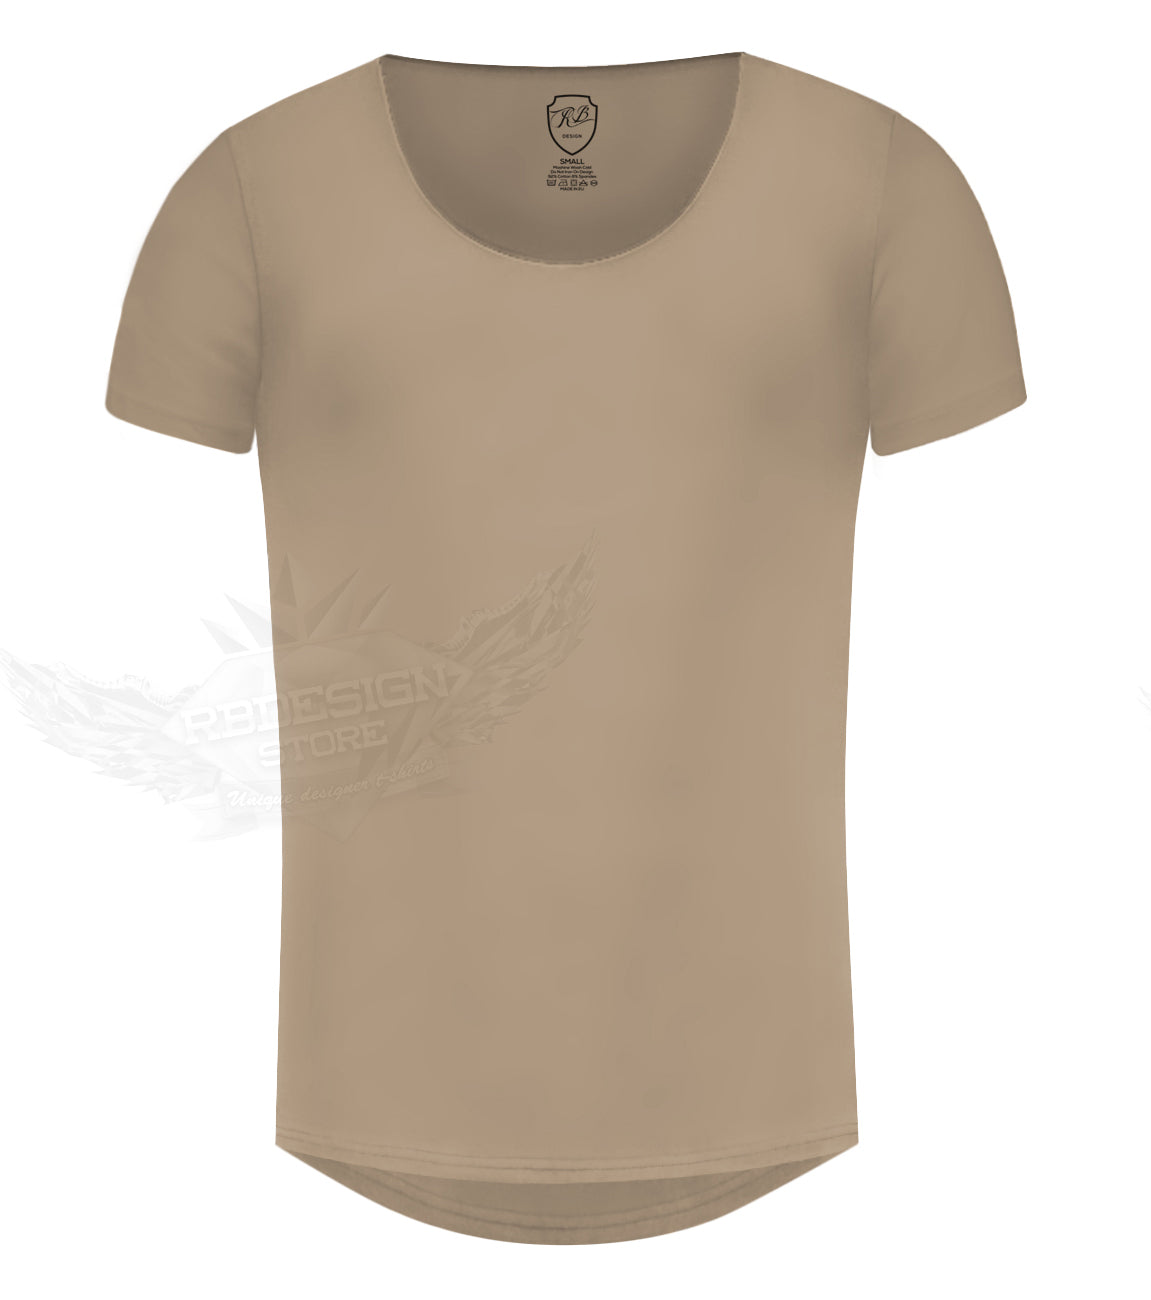 Men's Plain Beige Scoop Neck T-shirt - Cappuccino